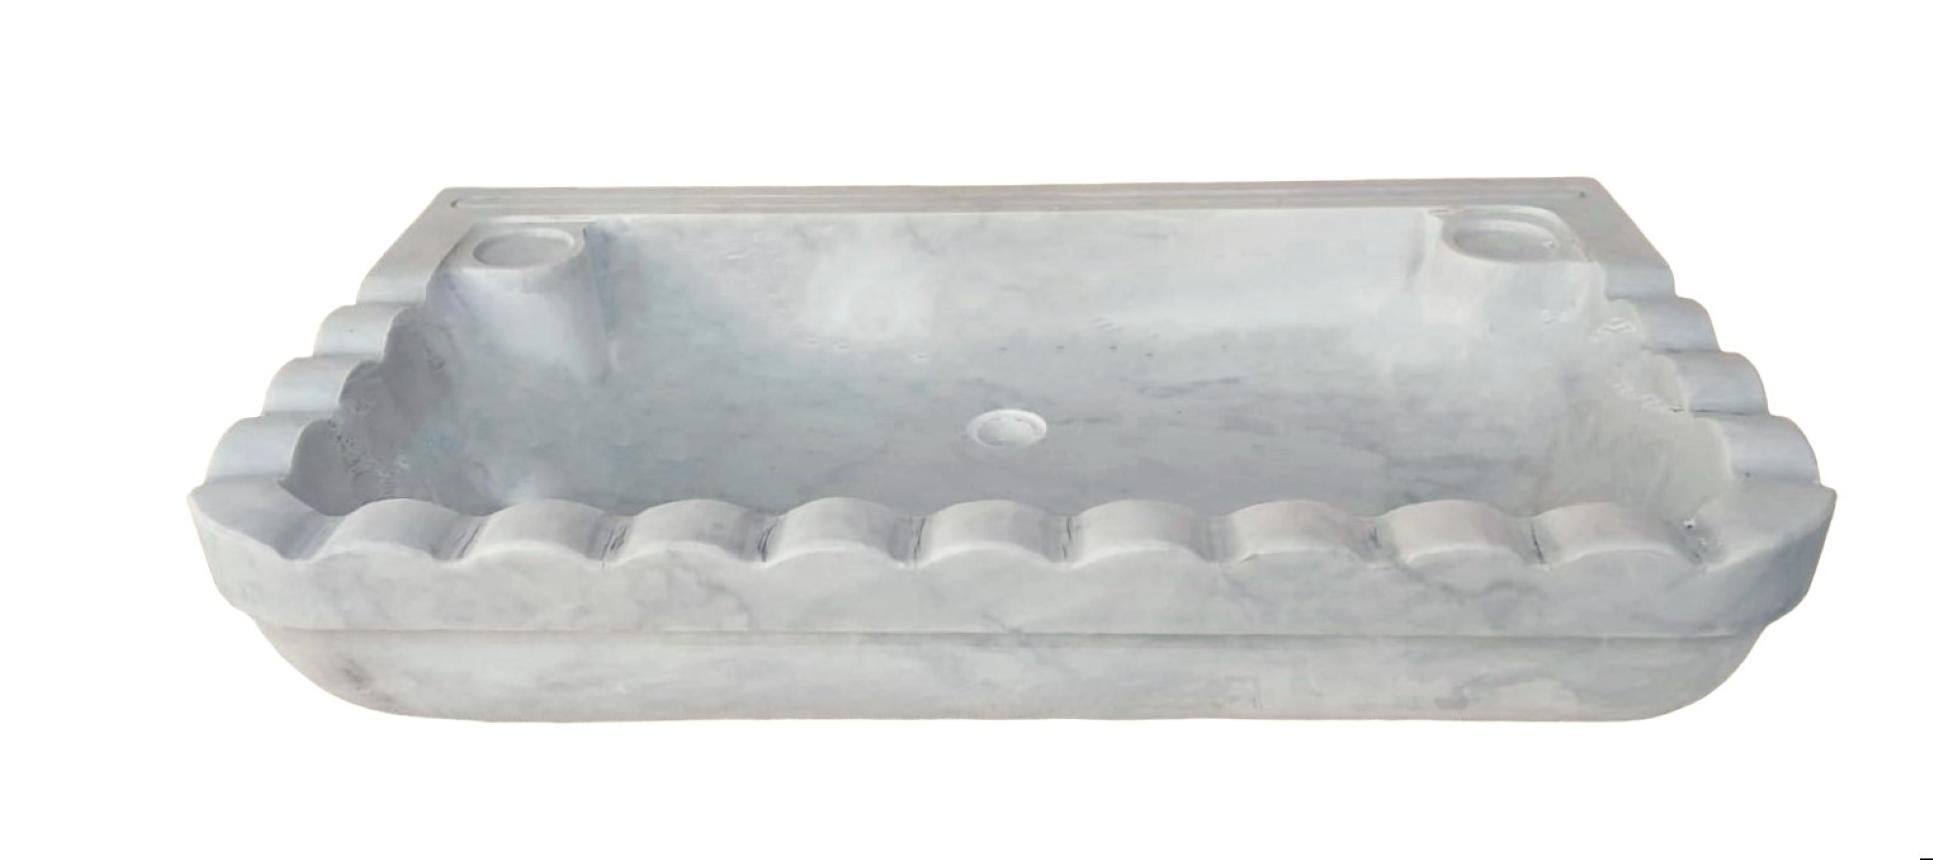 Dieses Waschbecken aus Carrara-Marmor wird in Italien aus dem tatsächlichen Marmor aus den Carrara-Minen außerhalb von Carrara selbst hergestellt. Das Design wurde von einem Originalmodell übernommen, das in Griechenland gefunden wurde, und es wurde